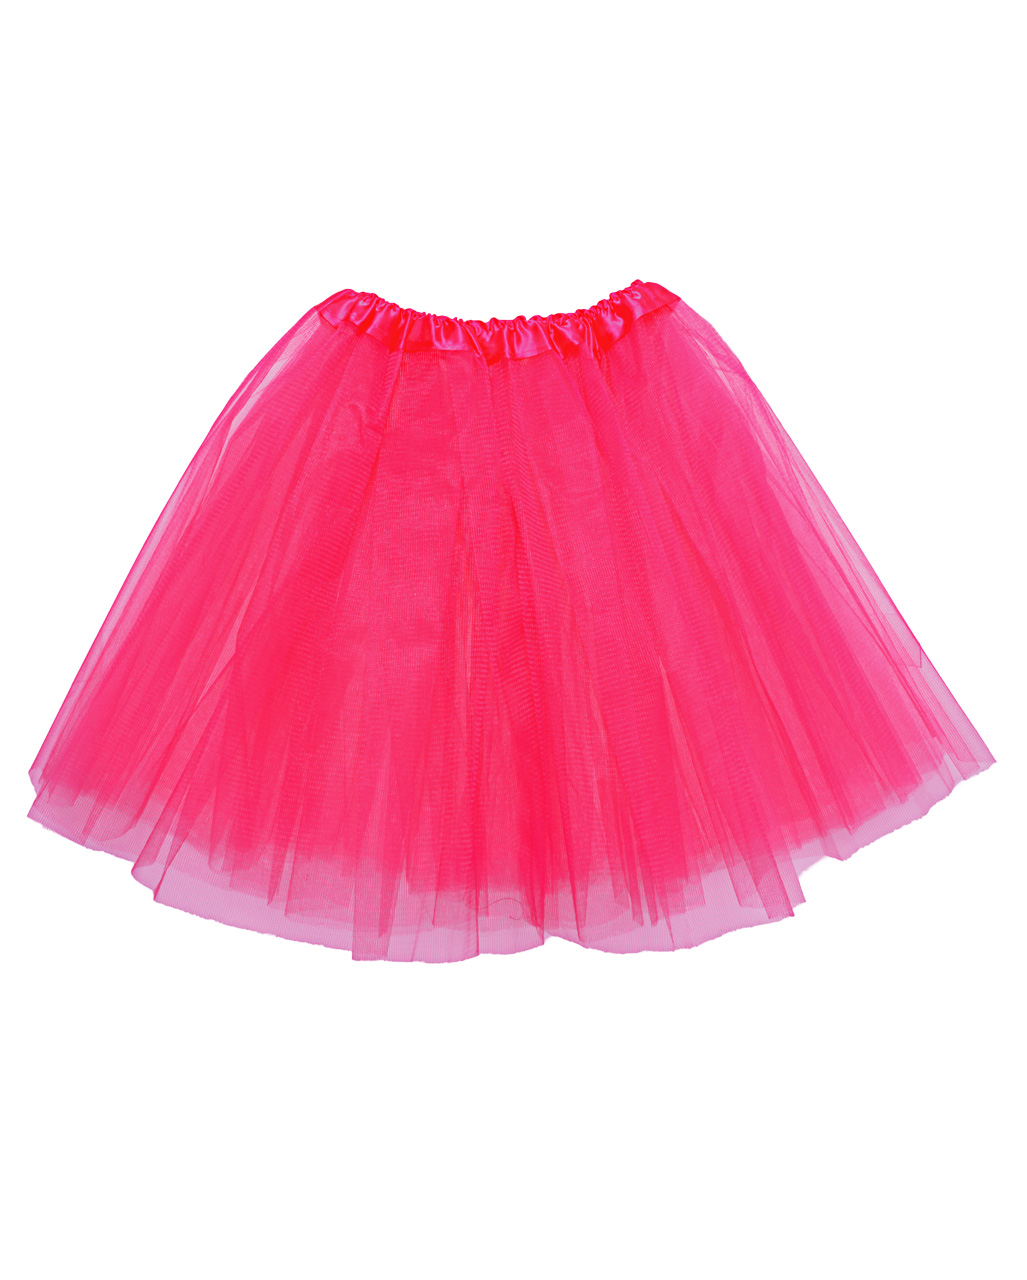 Ballerina Tutu for Kids Pink as Princess Costume | horror-shop.com